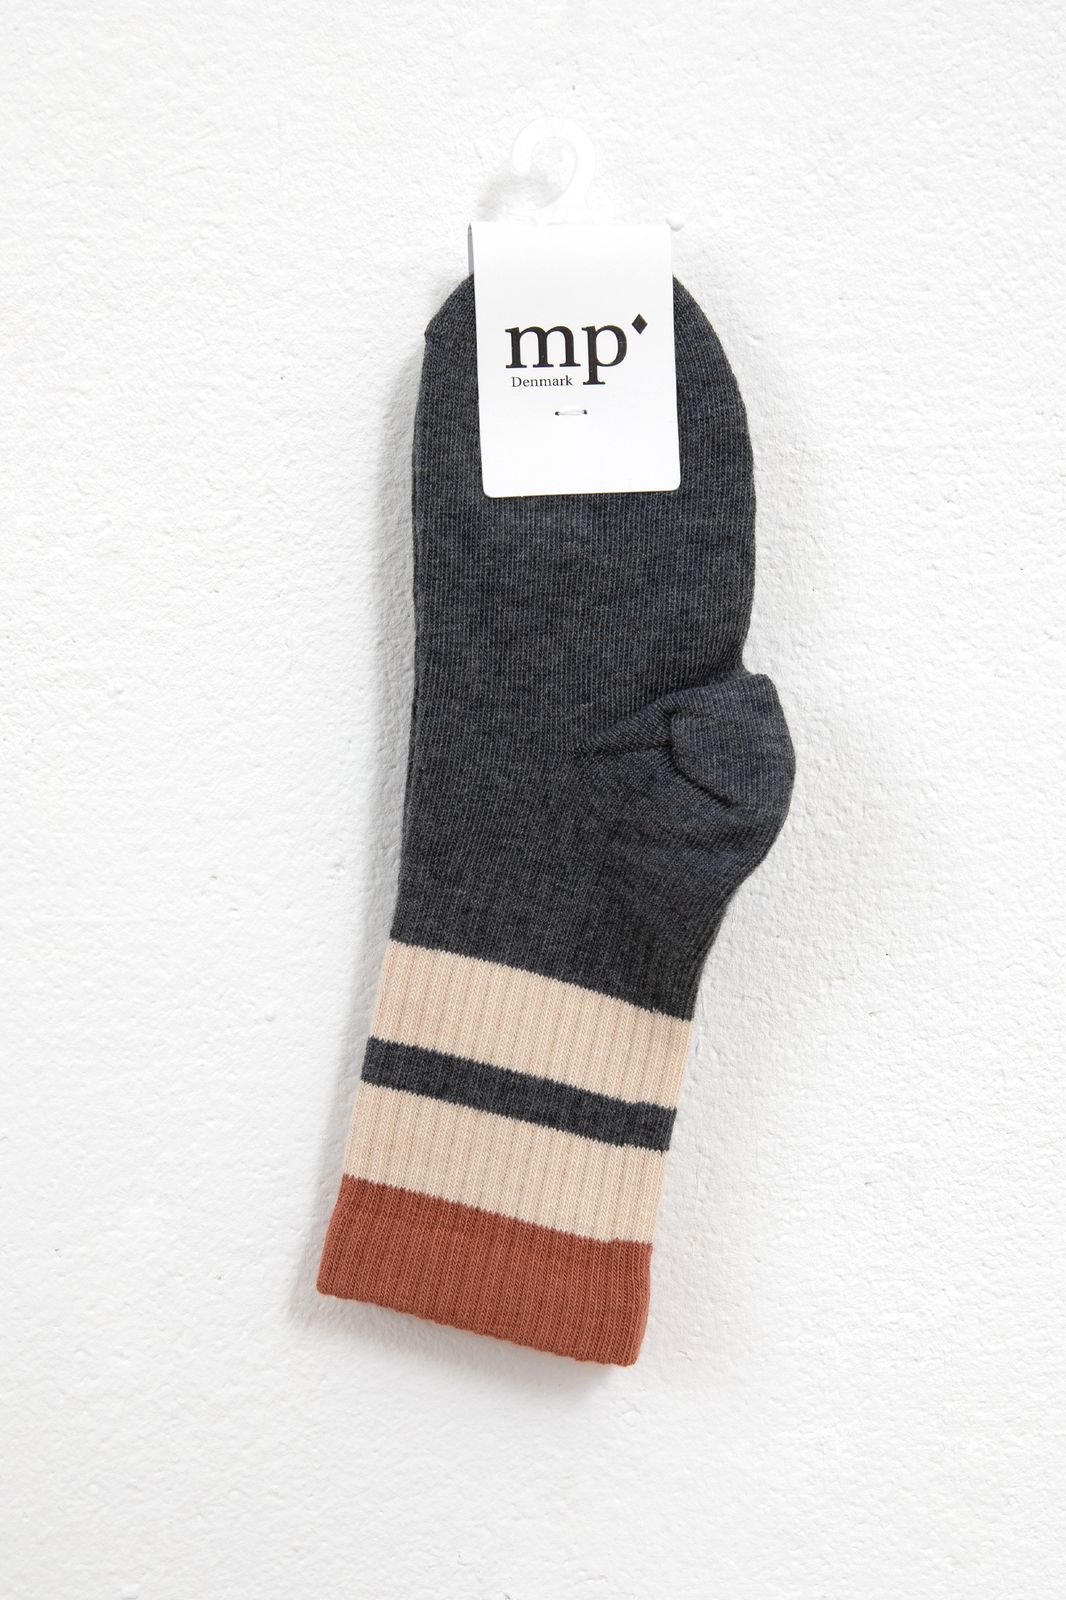 MP Denmark gestreifte Socken mit Colorblocking-Design